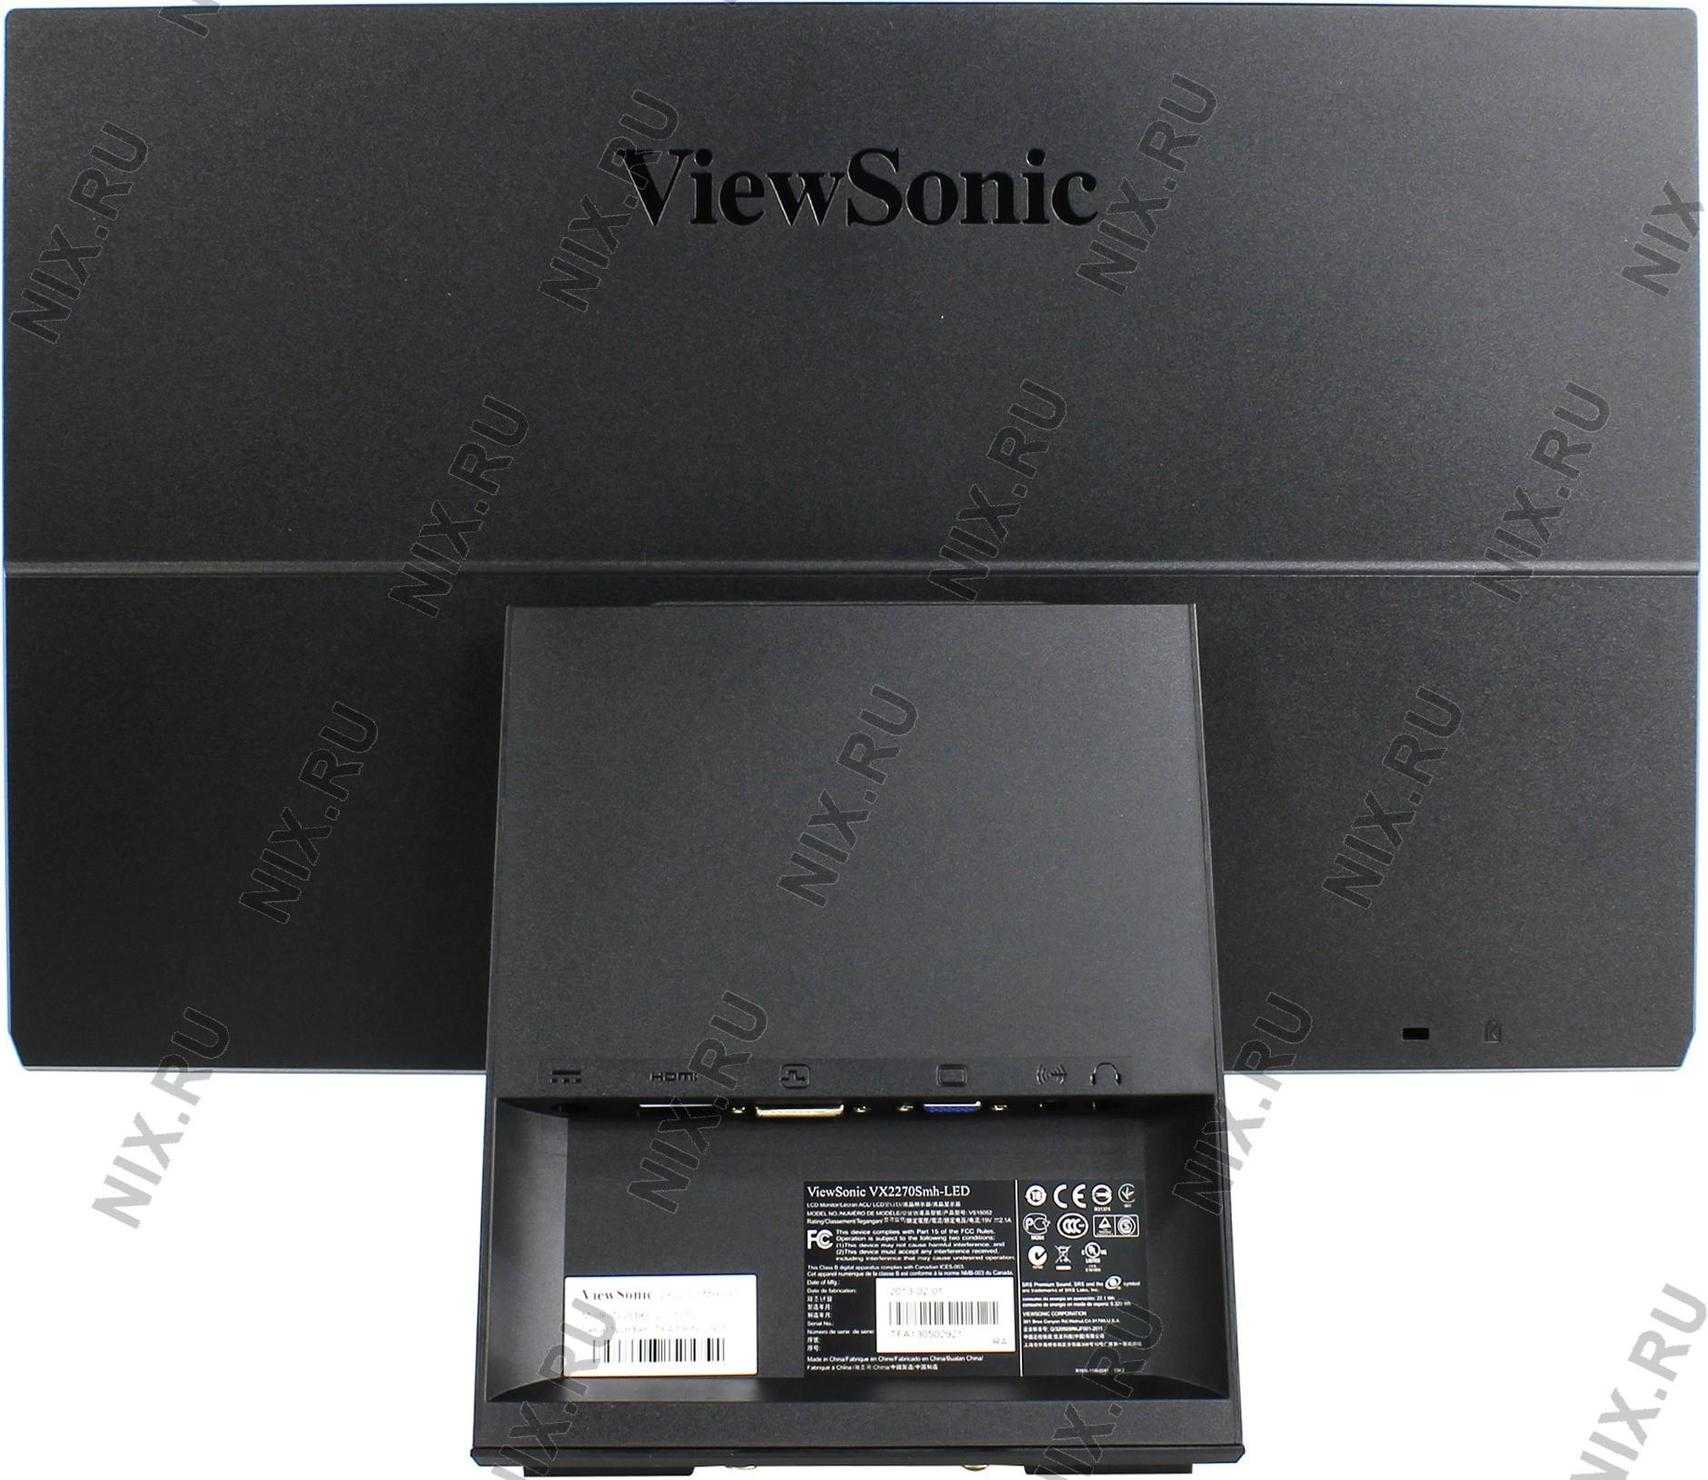 Монитор ViewSonic VX2270SMH-LED - подробные характеристики обзоры видео фото Цены в интернет-магазинах где можно купить монитор ViewSonic VX2270SMH-LED